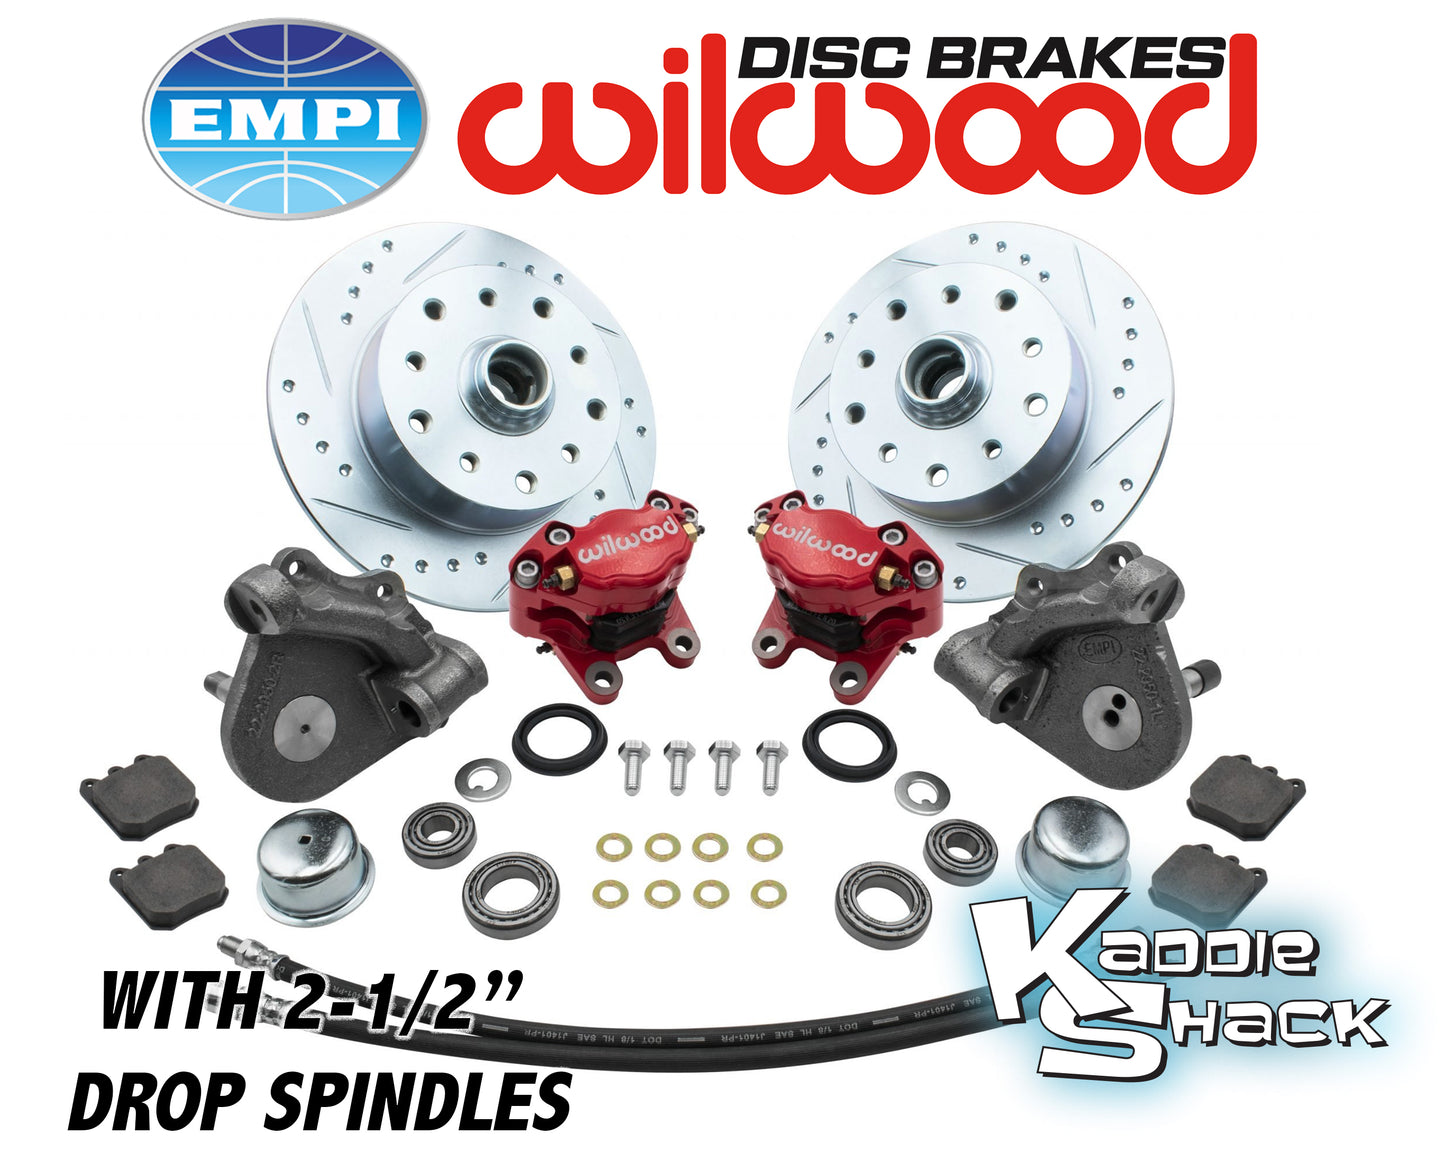 Wilwood Brakes w/ 2-1/2" Drop Spindles, Porsche/Chev, LP, Red